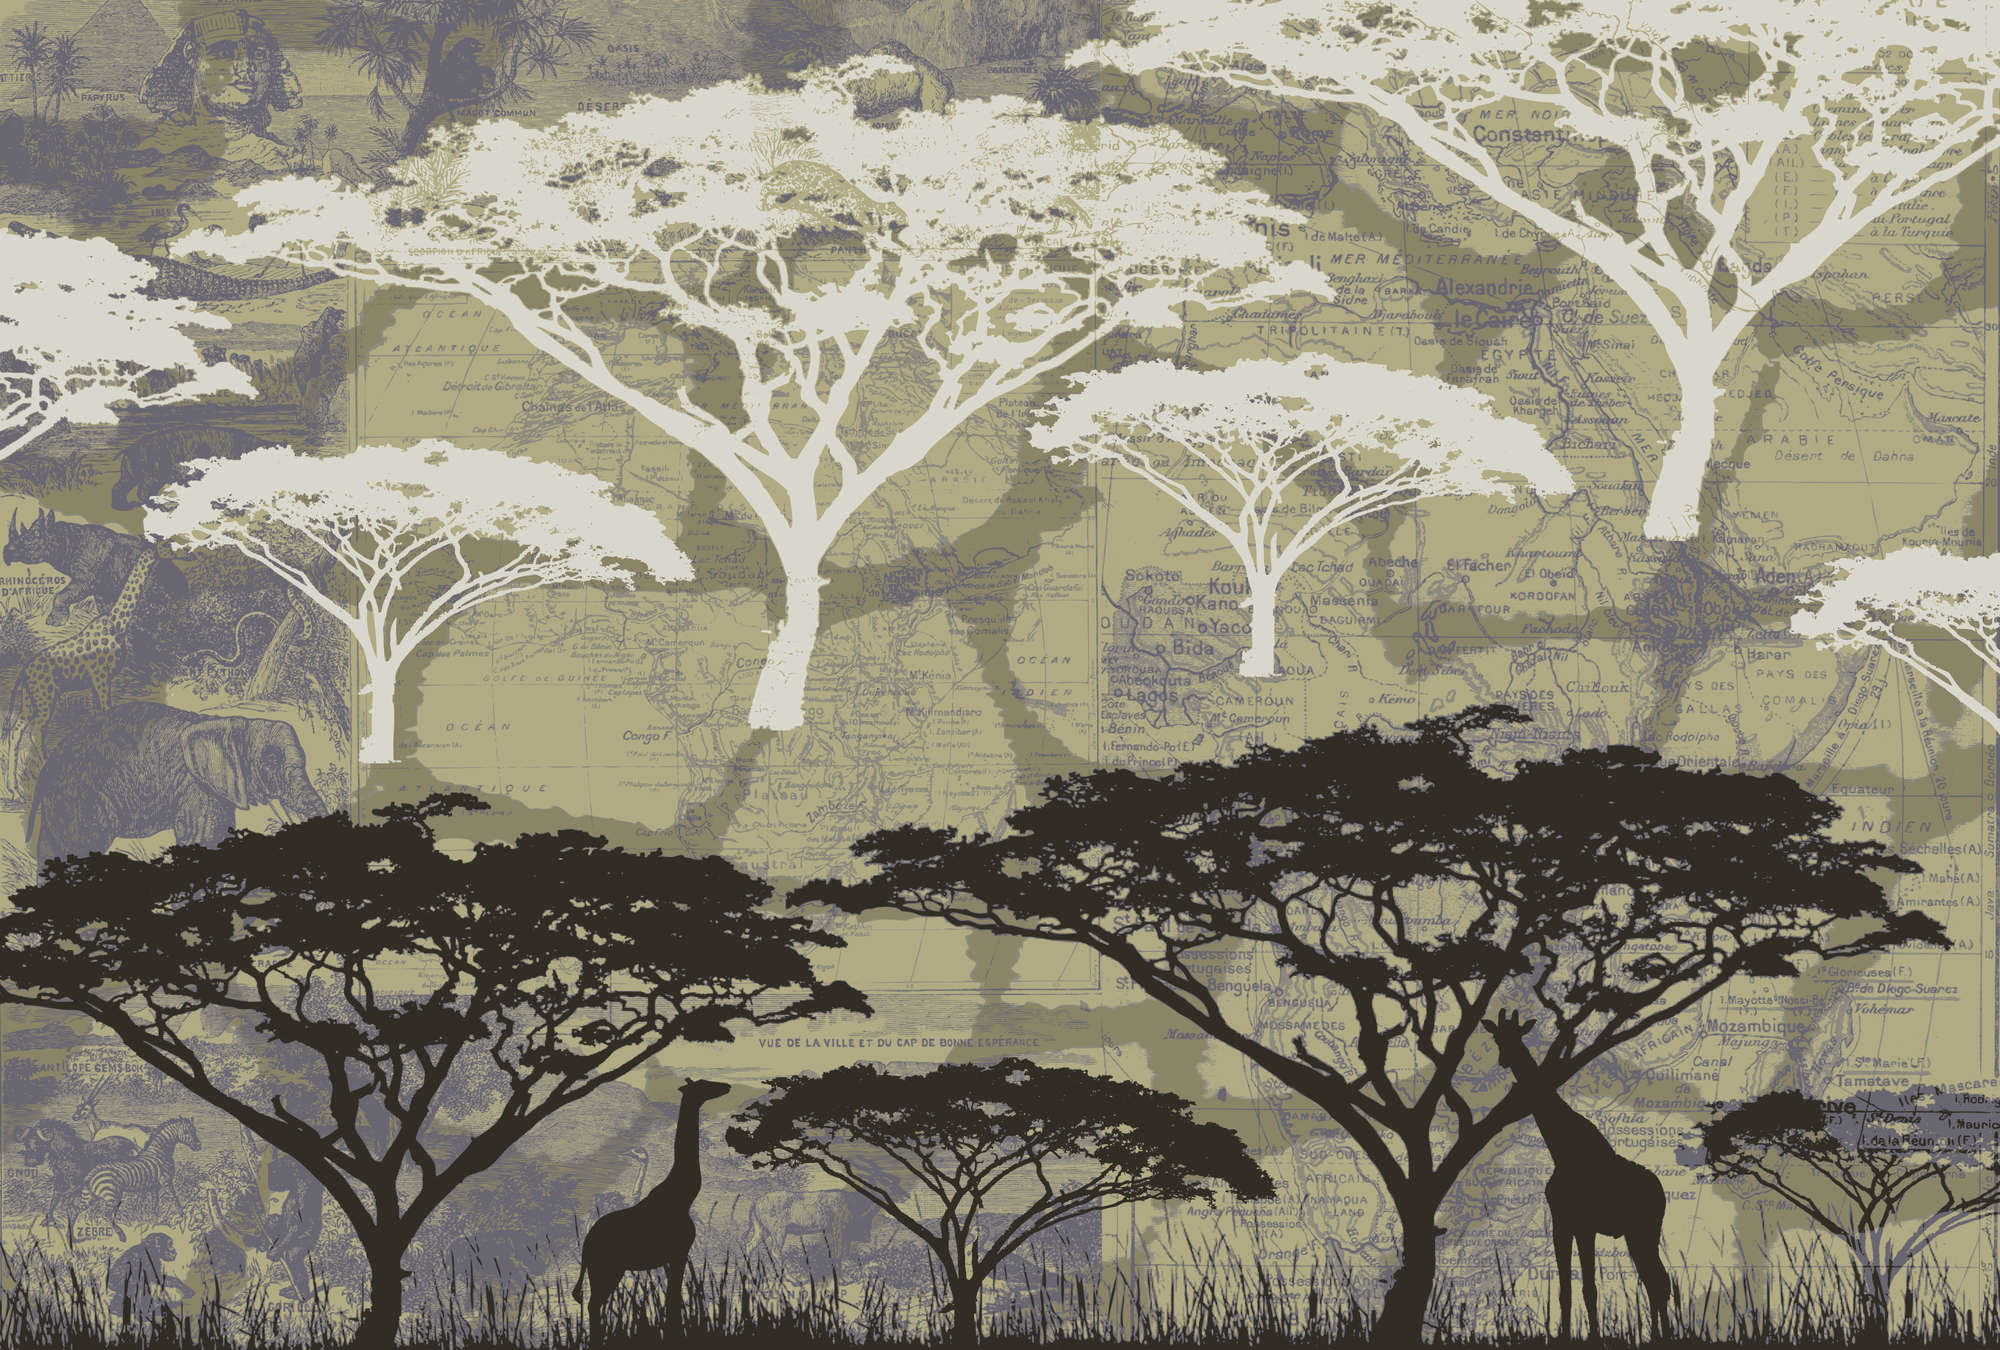             Savannah - Muurschildering met boommotief in Afrikaanse stijl
        